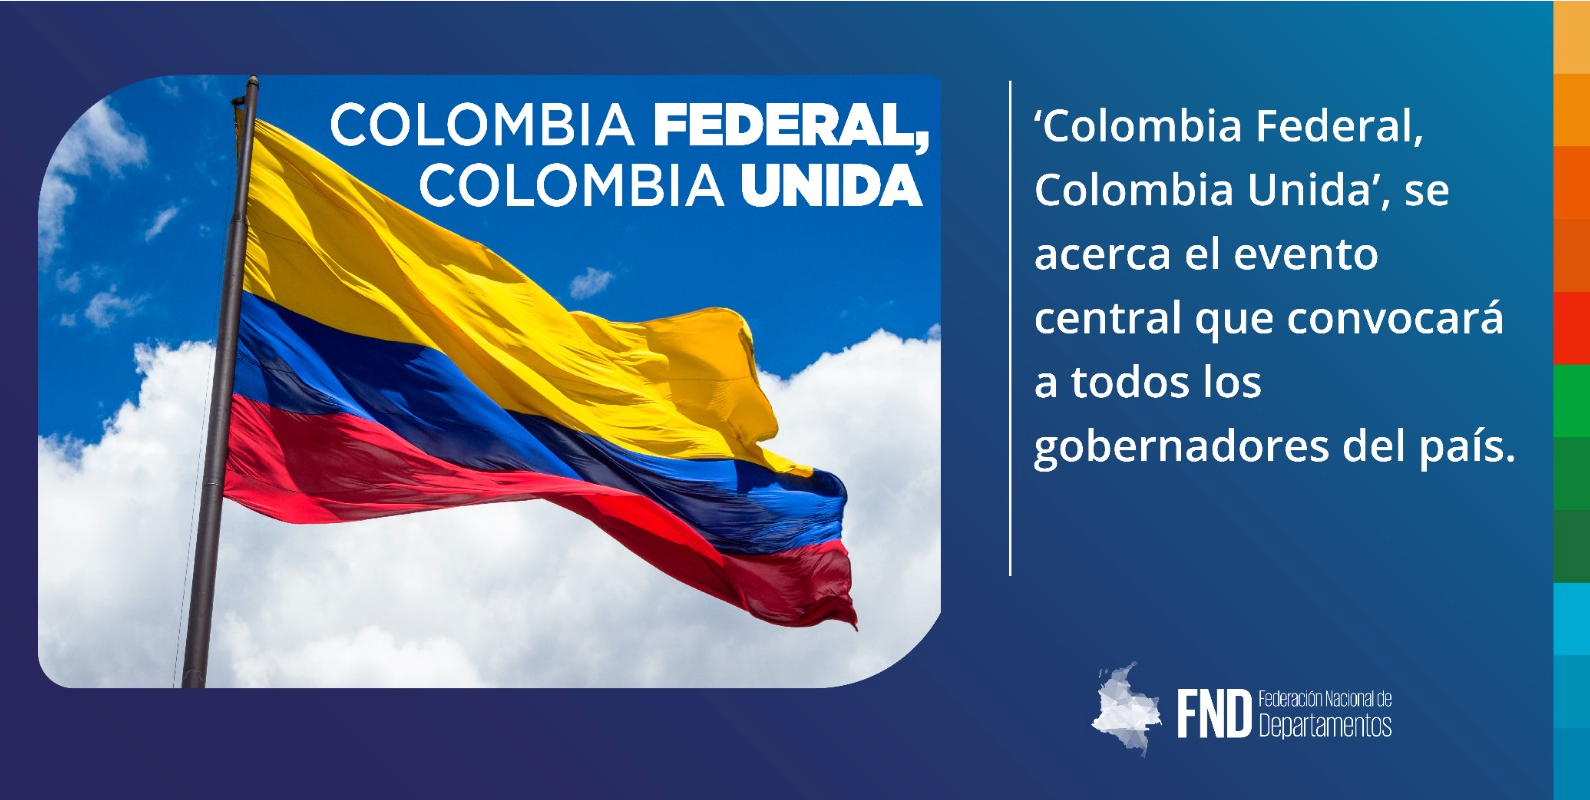  ‘Colombia Federal, Colombia Unida’, se acerca el evento central que convocará a todos los gobernadores del país